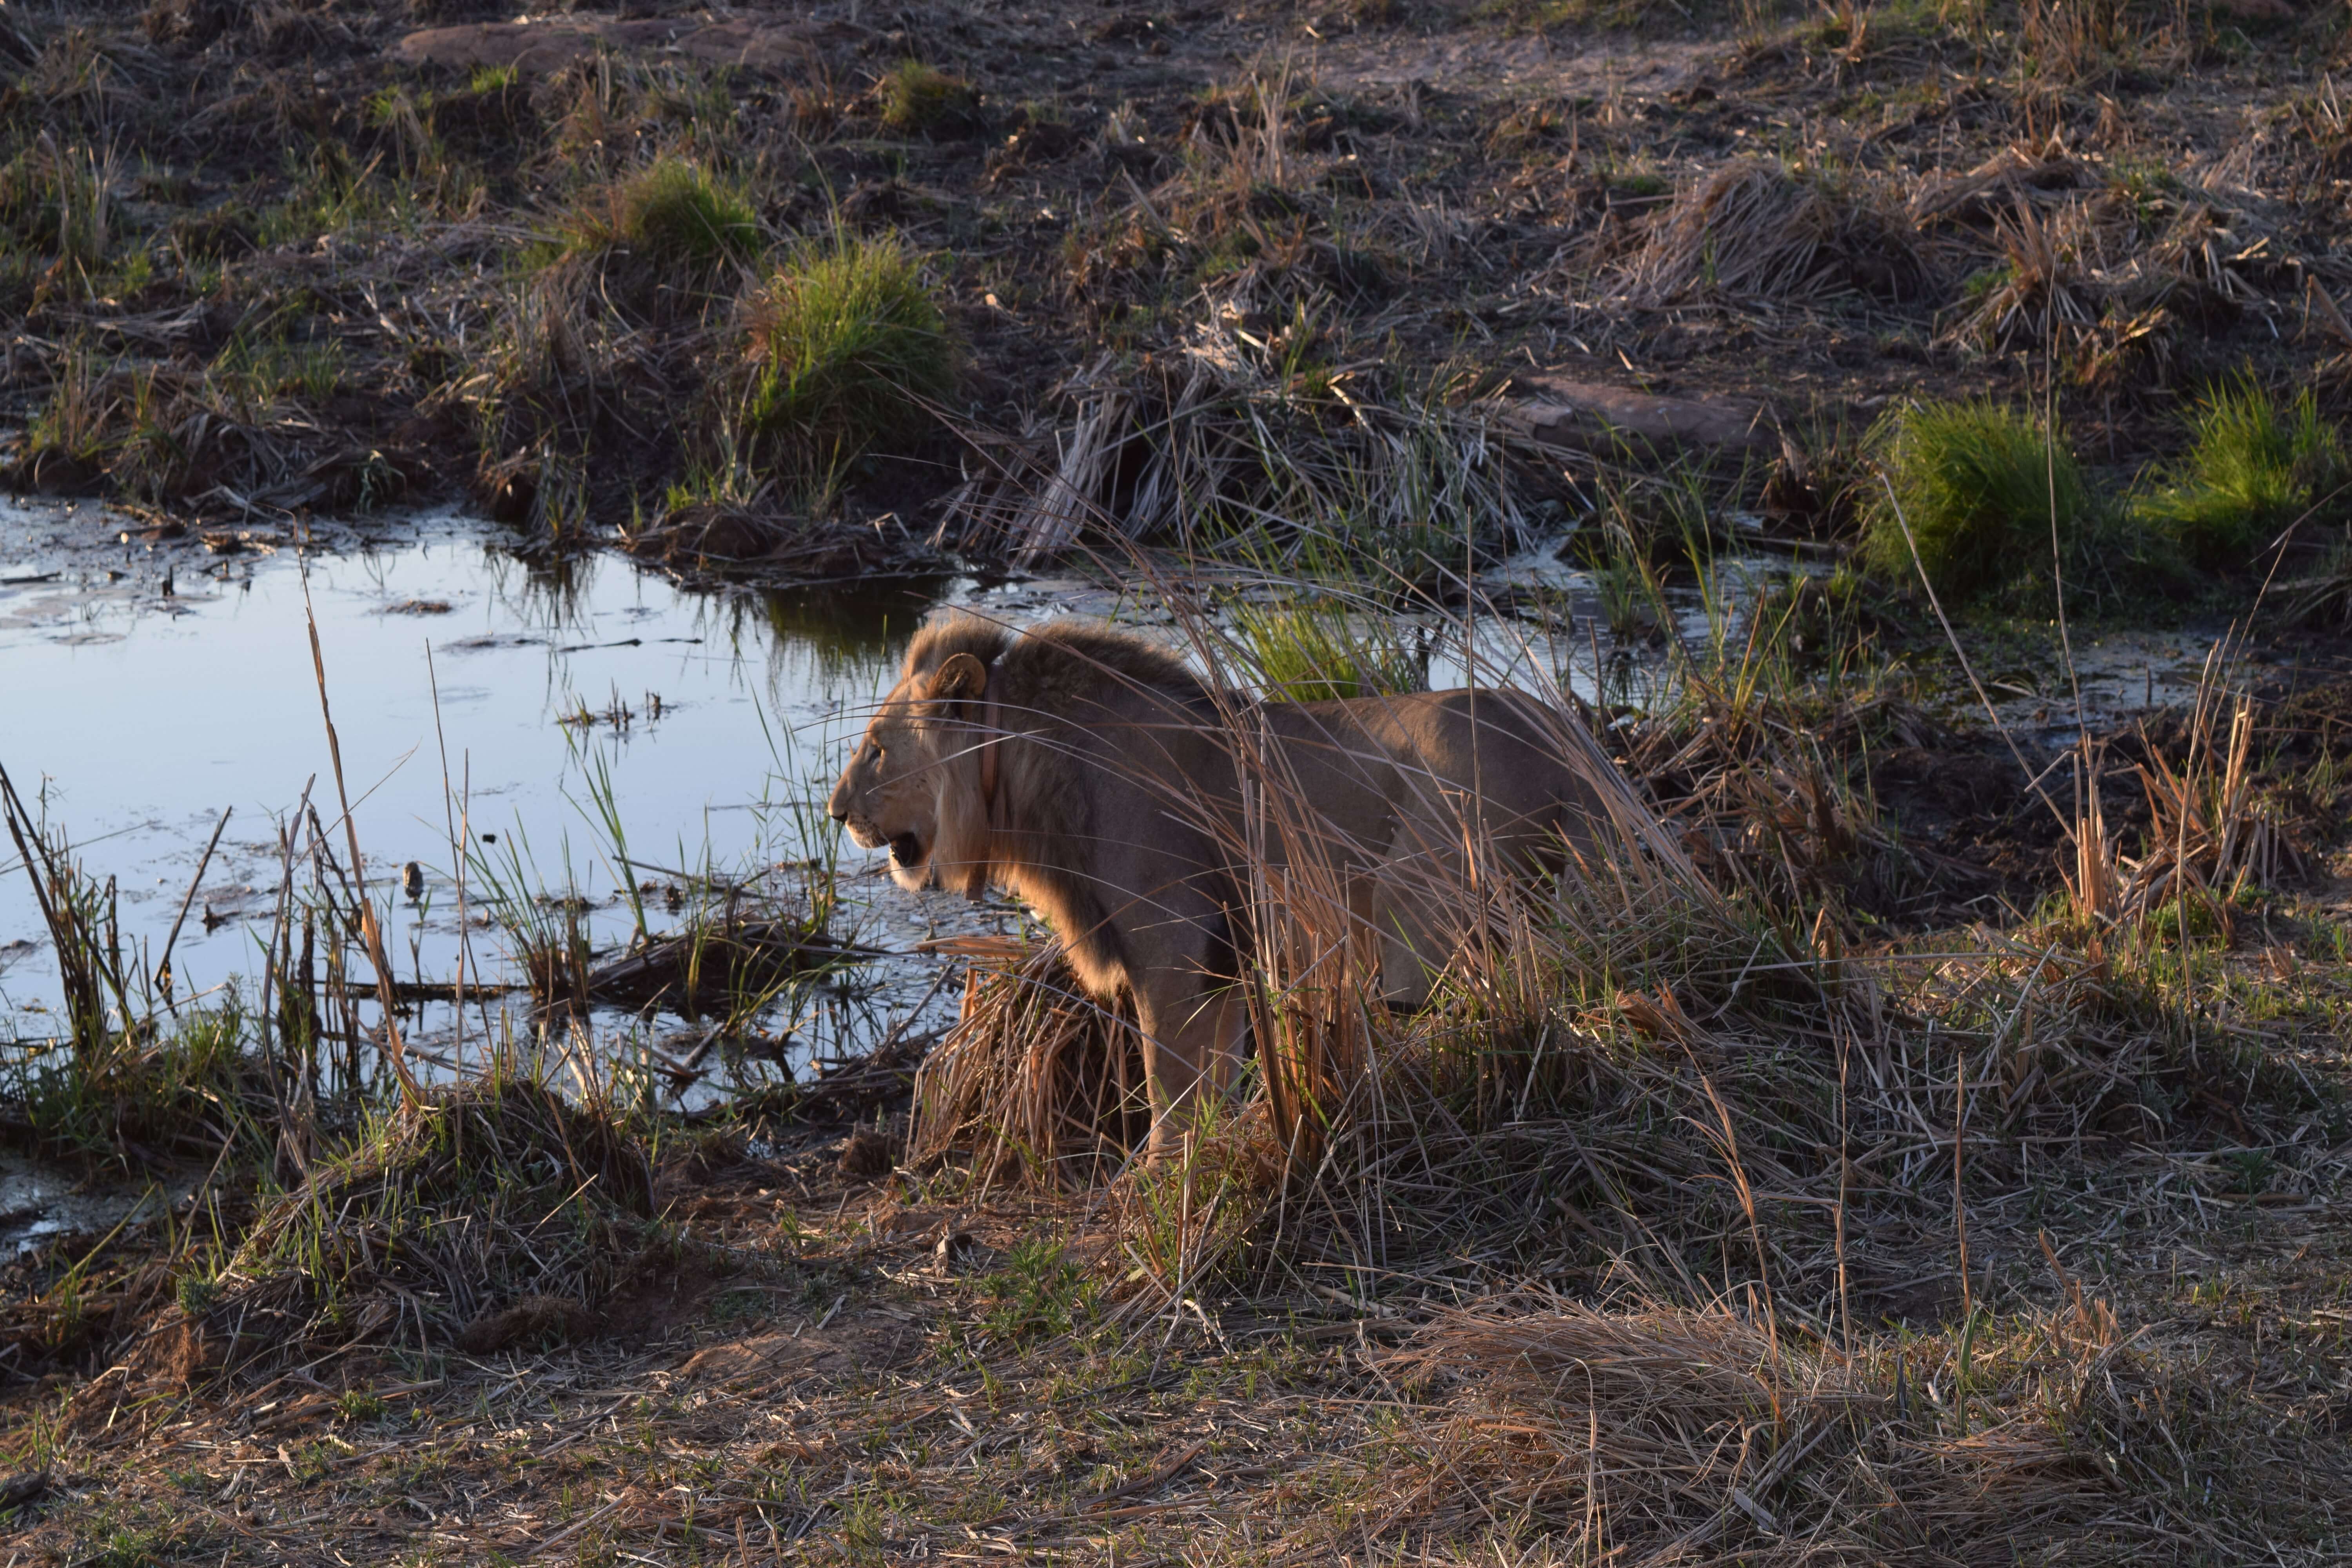 Leeuw bij waterhole in Zuid-Afrika